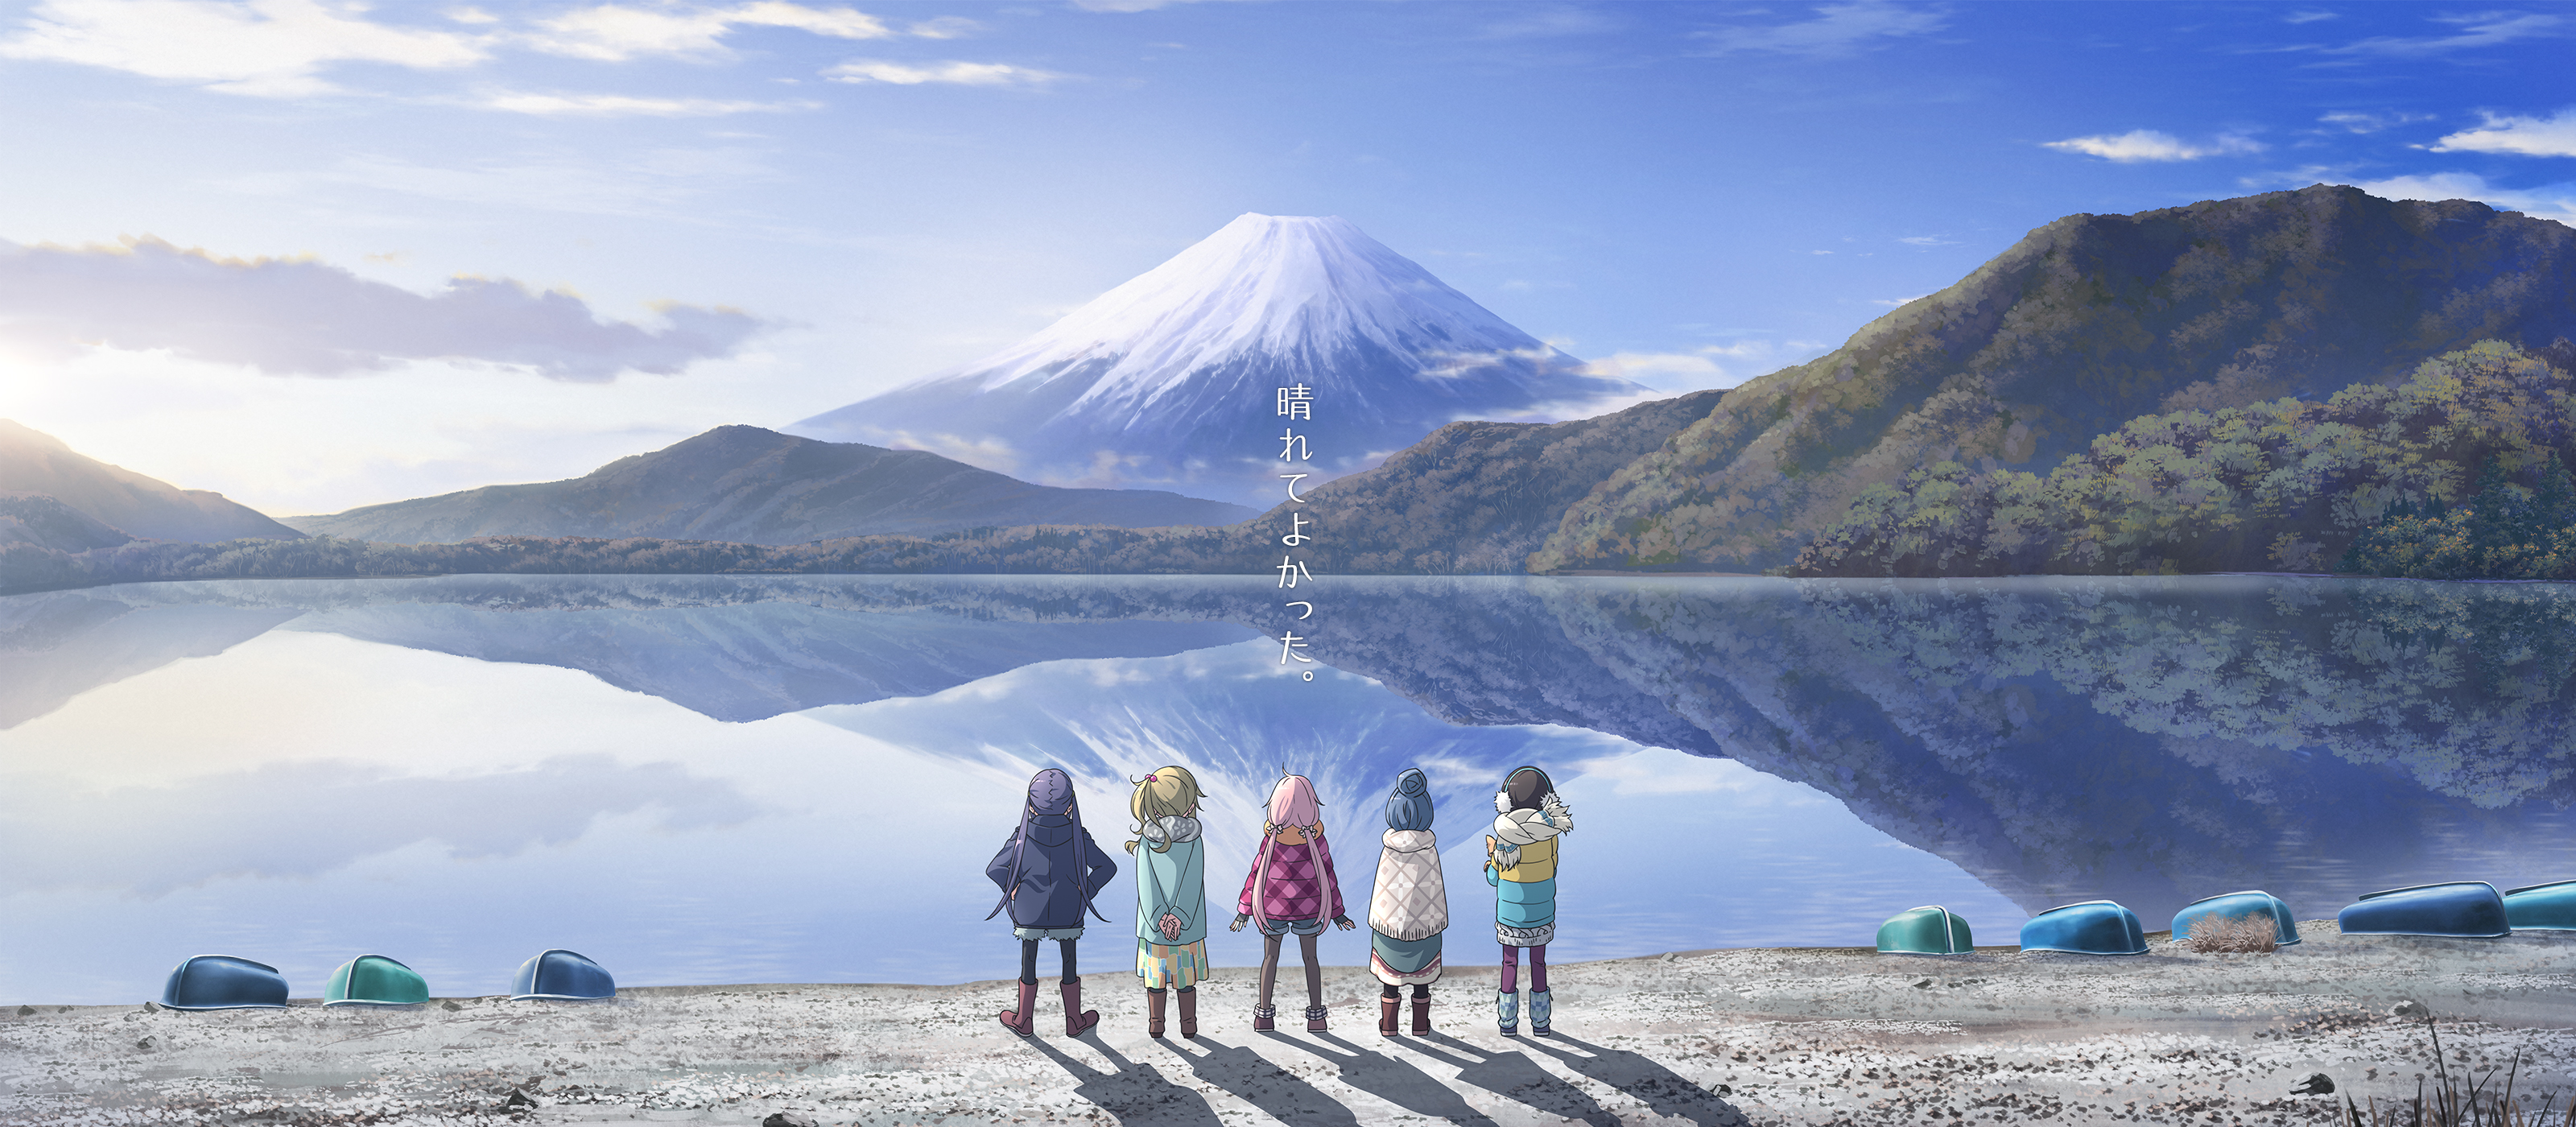 Girls And Mount Fuji Scenery Wallpaper - Yuru Camp Wallpaper Hd , HD Wallpaper & Backgrounds